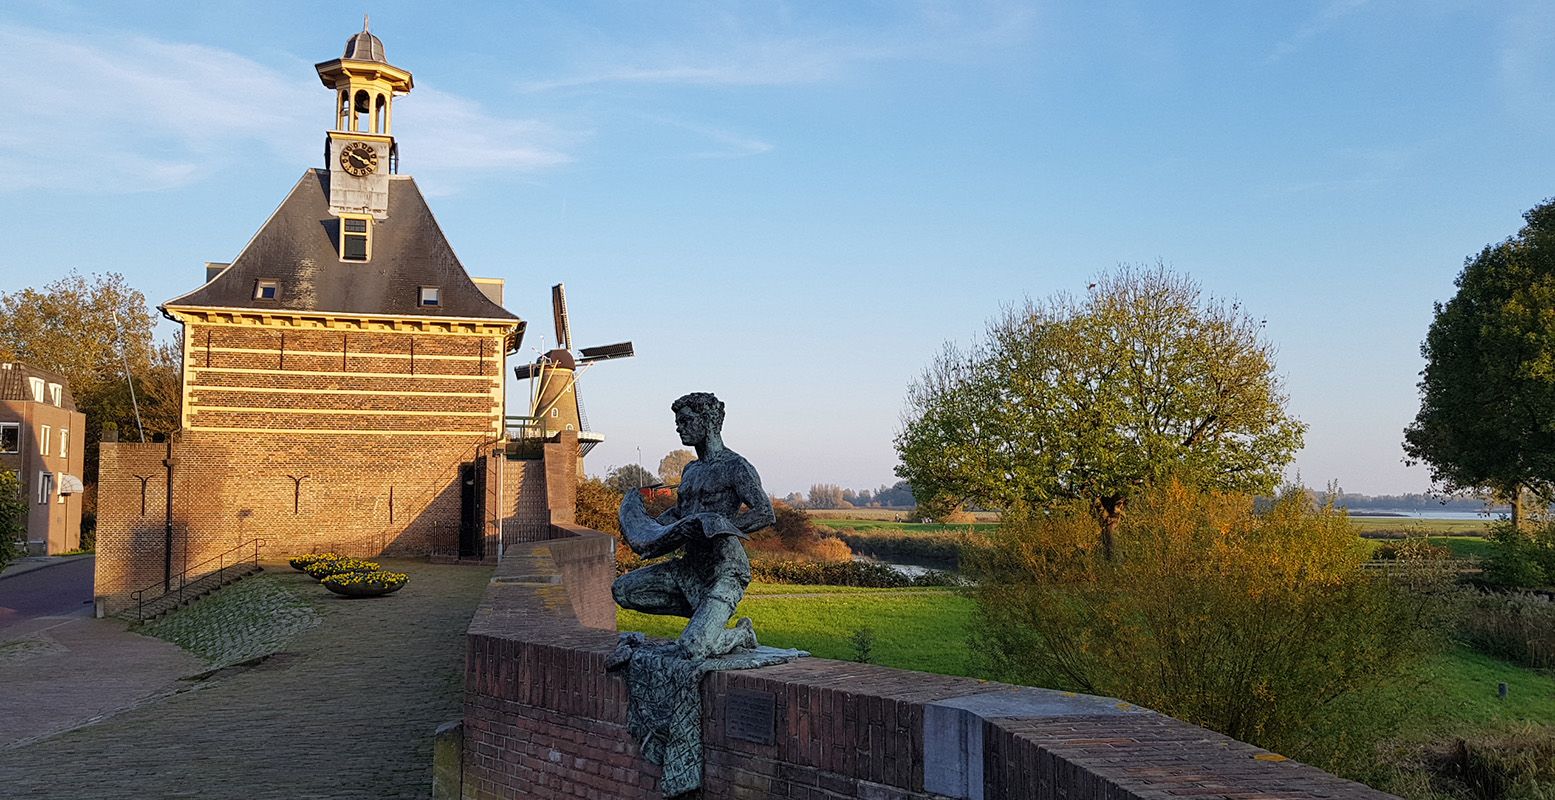 De Dalemsepoort en het beeld De Zalmvisser vanaf de vestingmuur, met op de achtergrond Molen de Hoop. Foto: DagjeWeg.NL © Tonny van Oosten